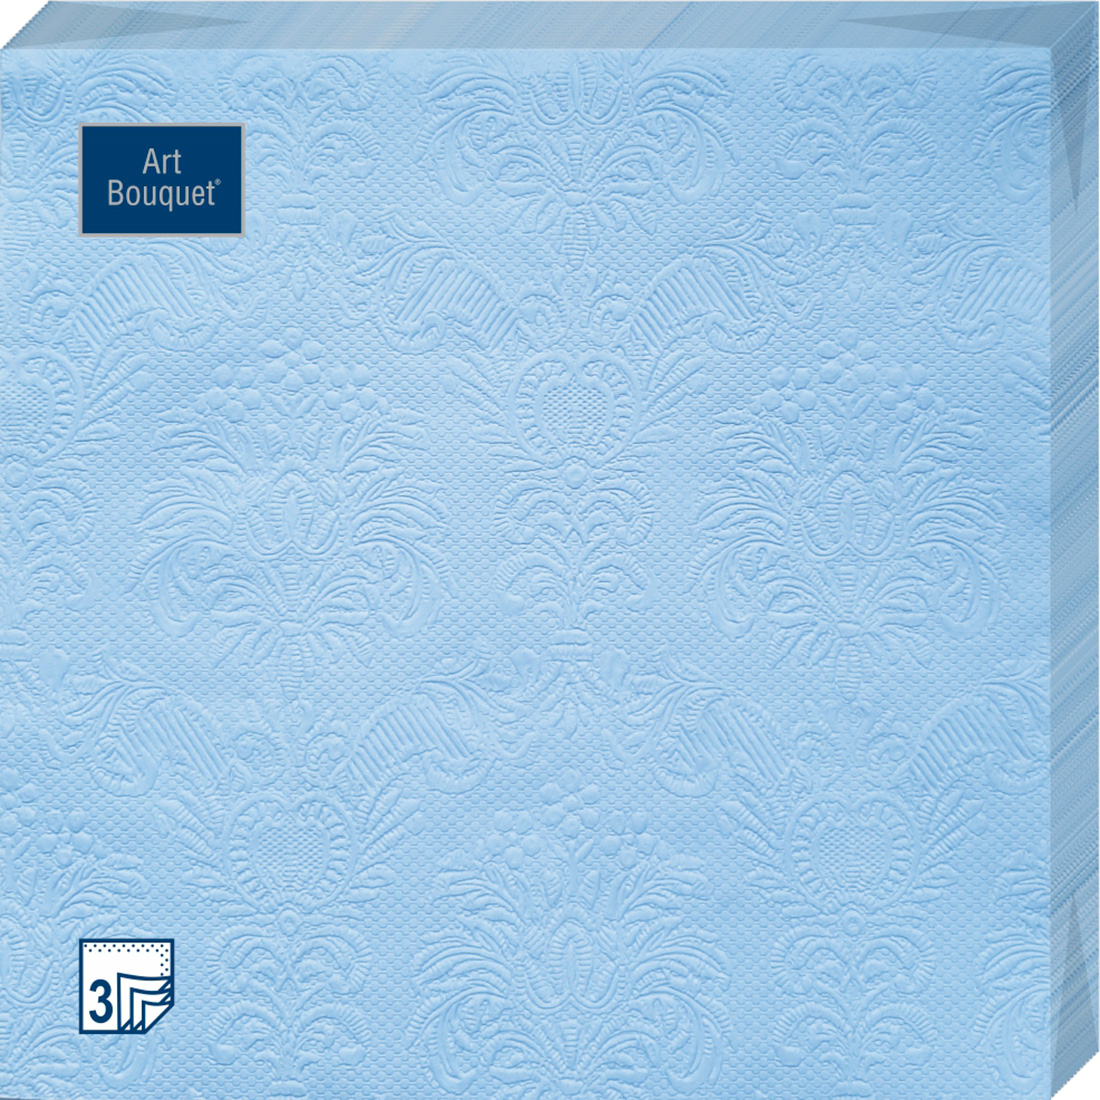 Салфетки Art bouquet бумажные голубой барокко 33х33 3сл 16шт